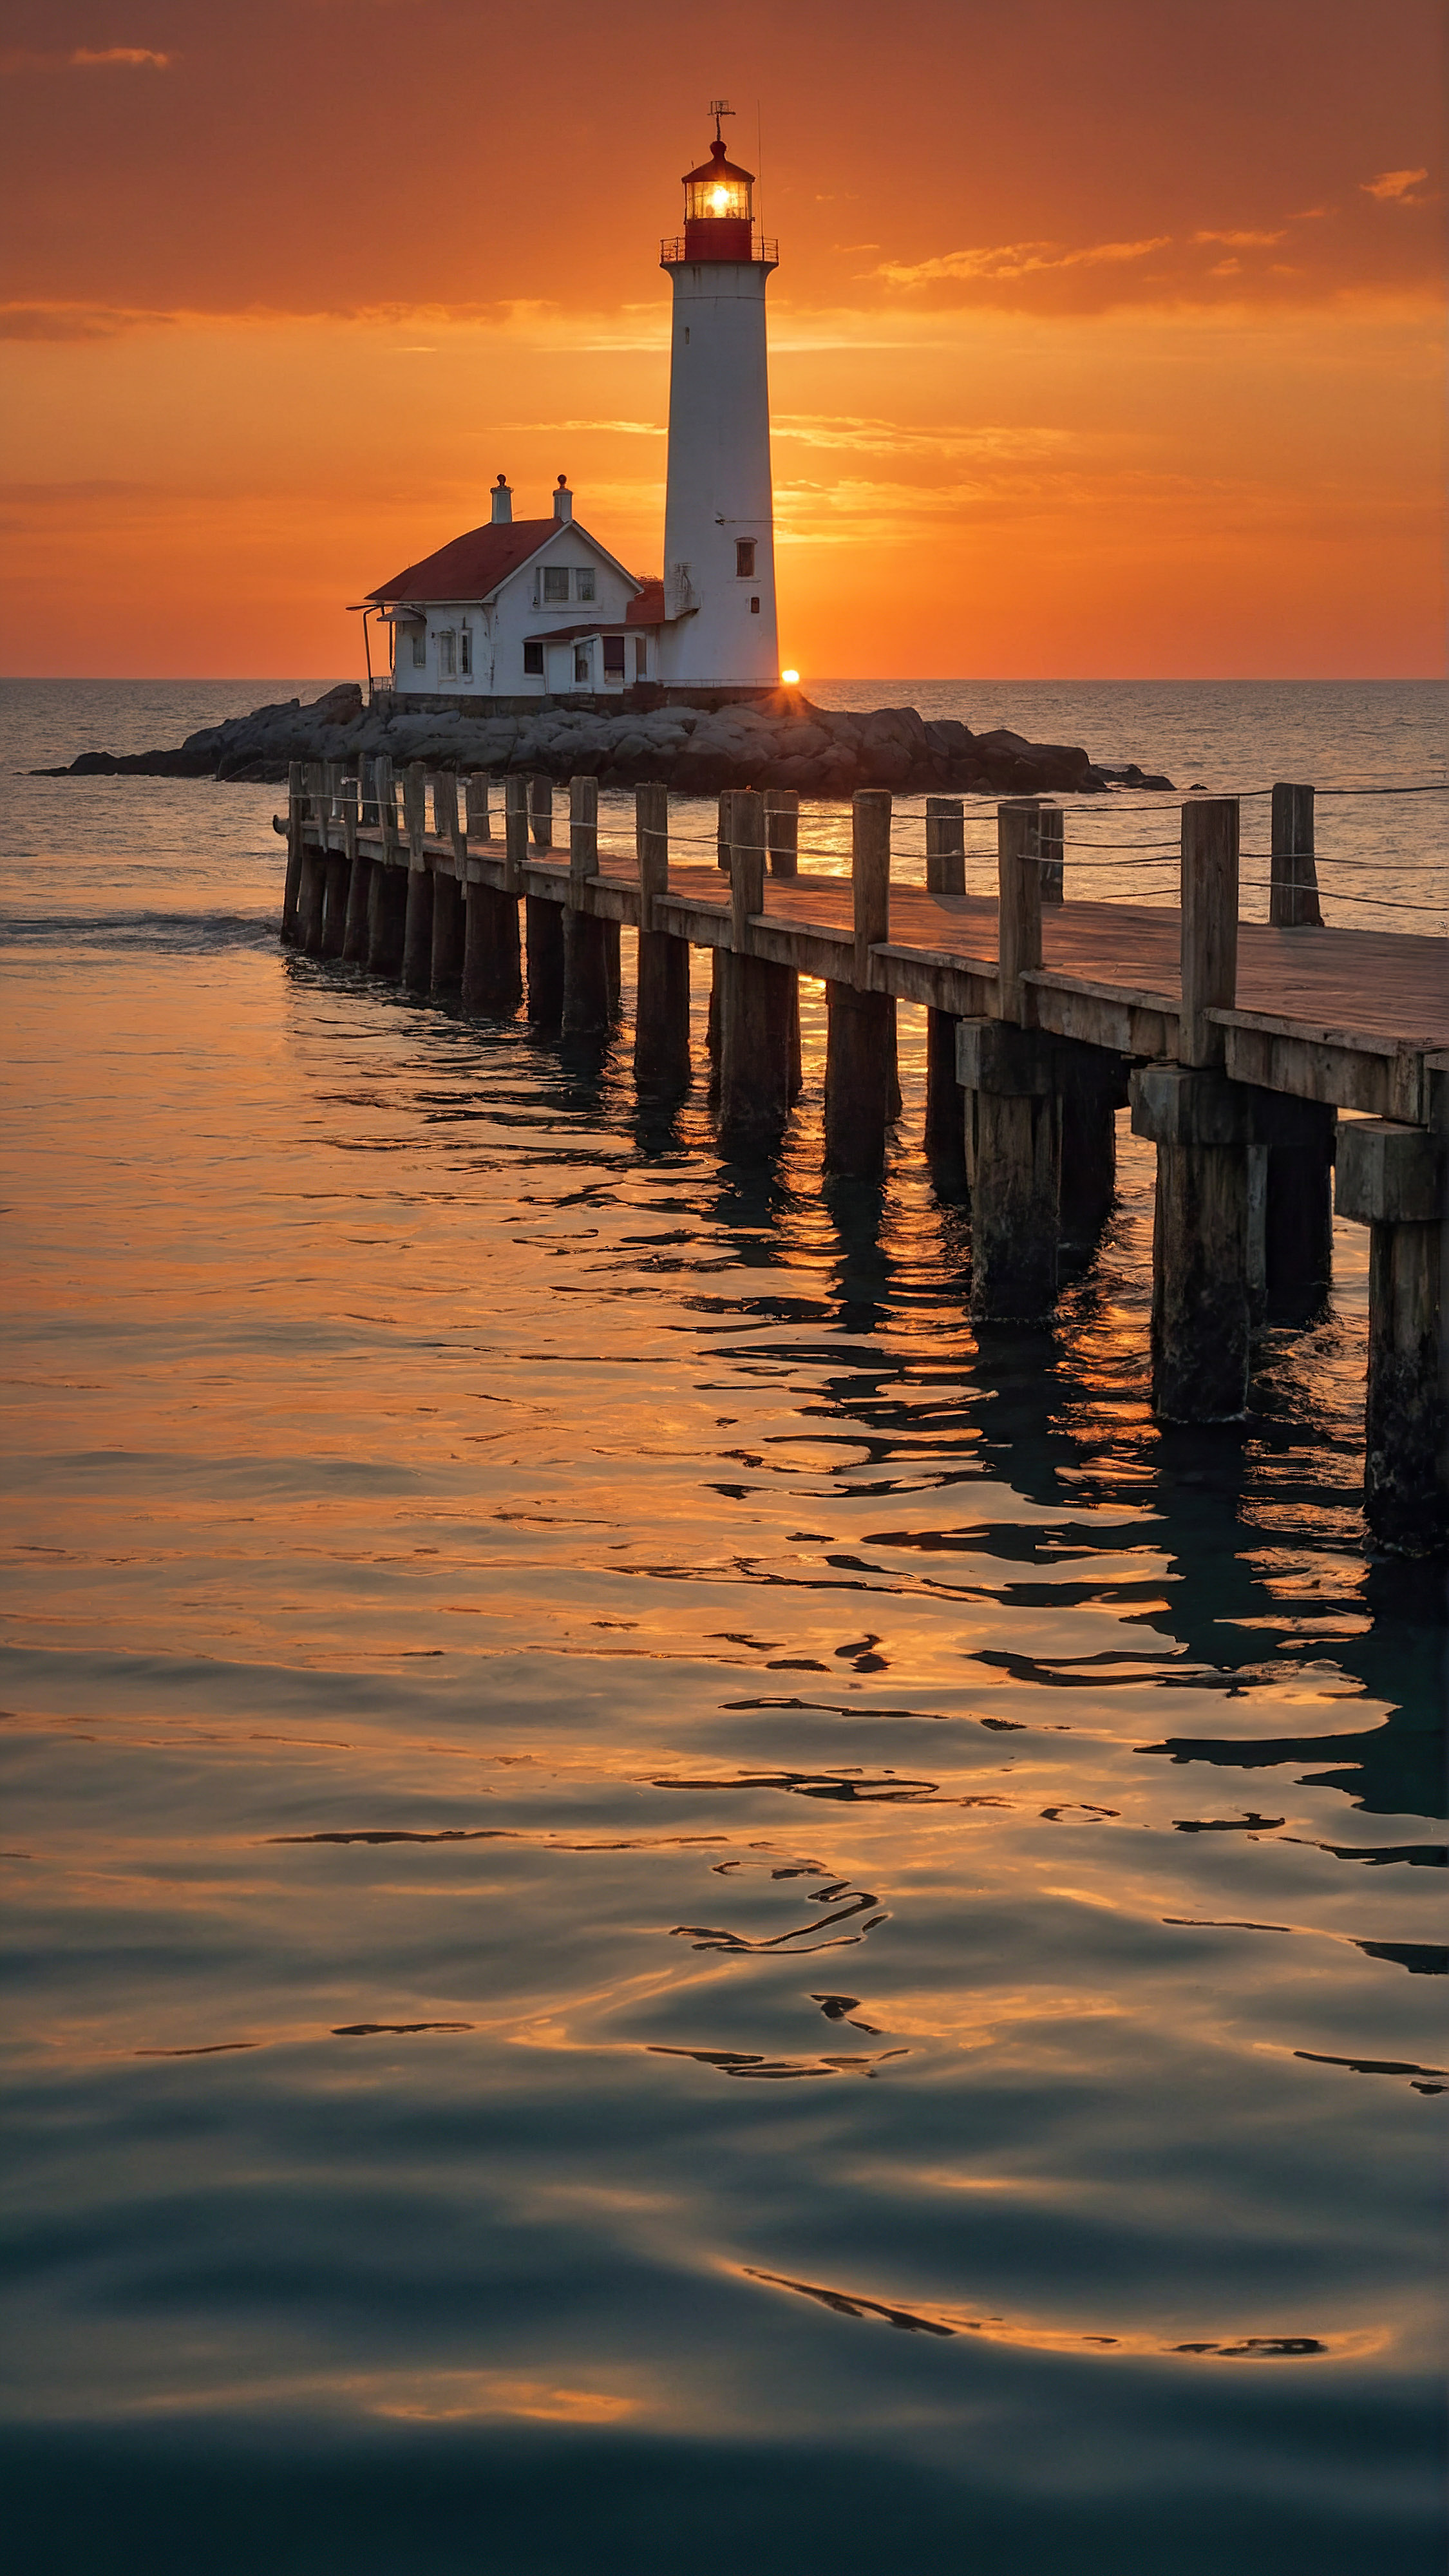 Perdez-vous dans la magie du coucher de soleil avec notre fond d'écran iPhone, présentant une scène tranquille d'un phare au bout d'une longue jetée, entouré par la mer calme sous un ciel de coucher de soleil aux teintes orange enchanteur.